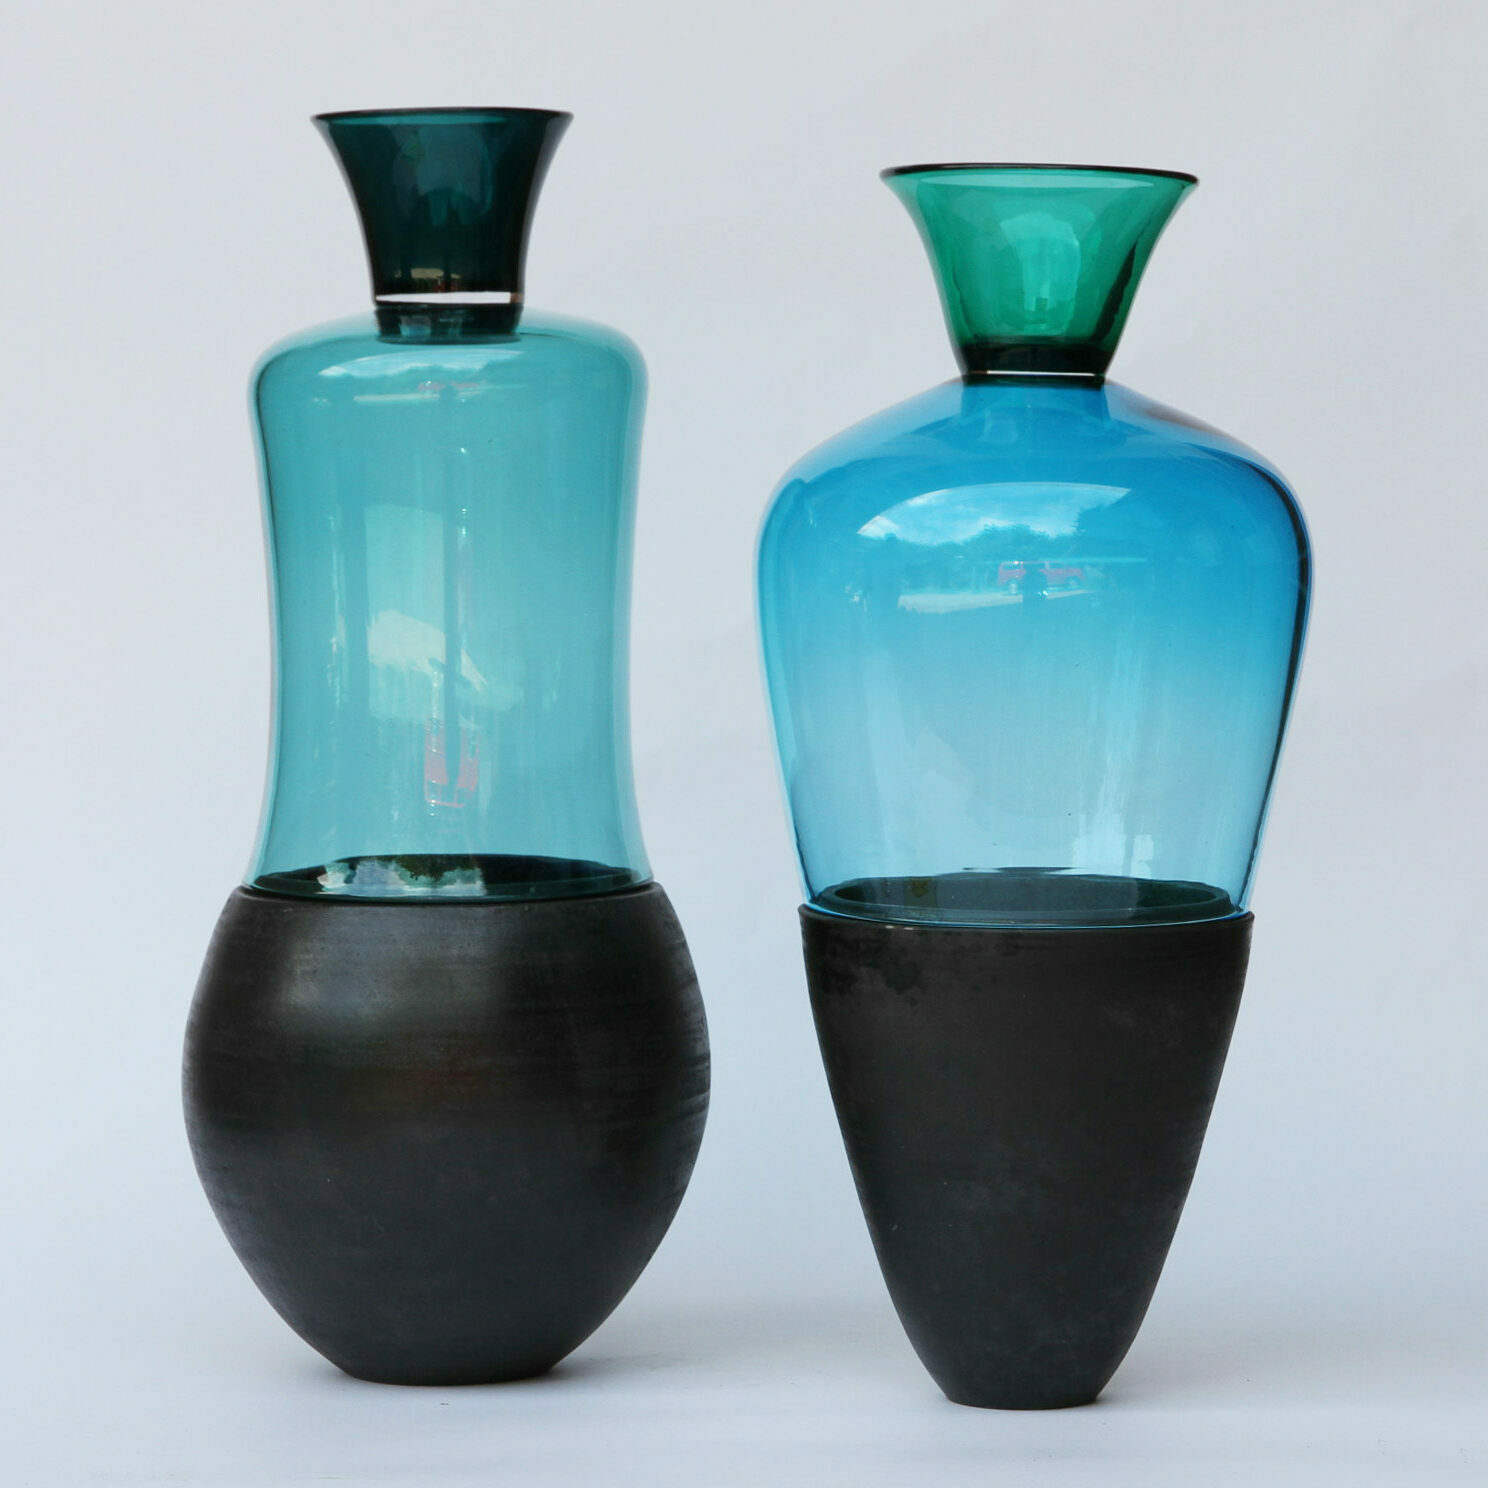 stacking vessels utopia & utility vasen funktionale skulpturen glas keramik messing kupfer holz design inneneinrichtung einrichtungsidee